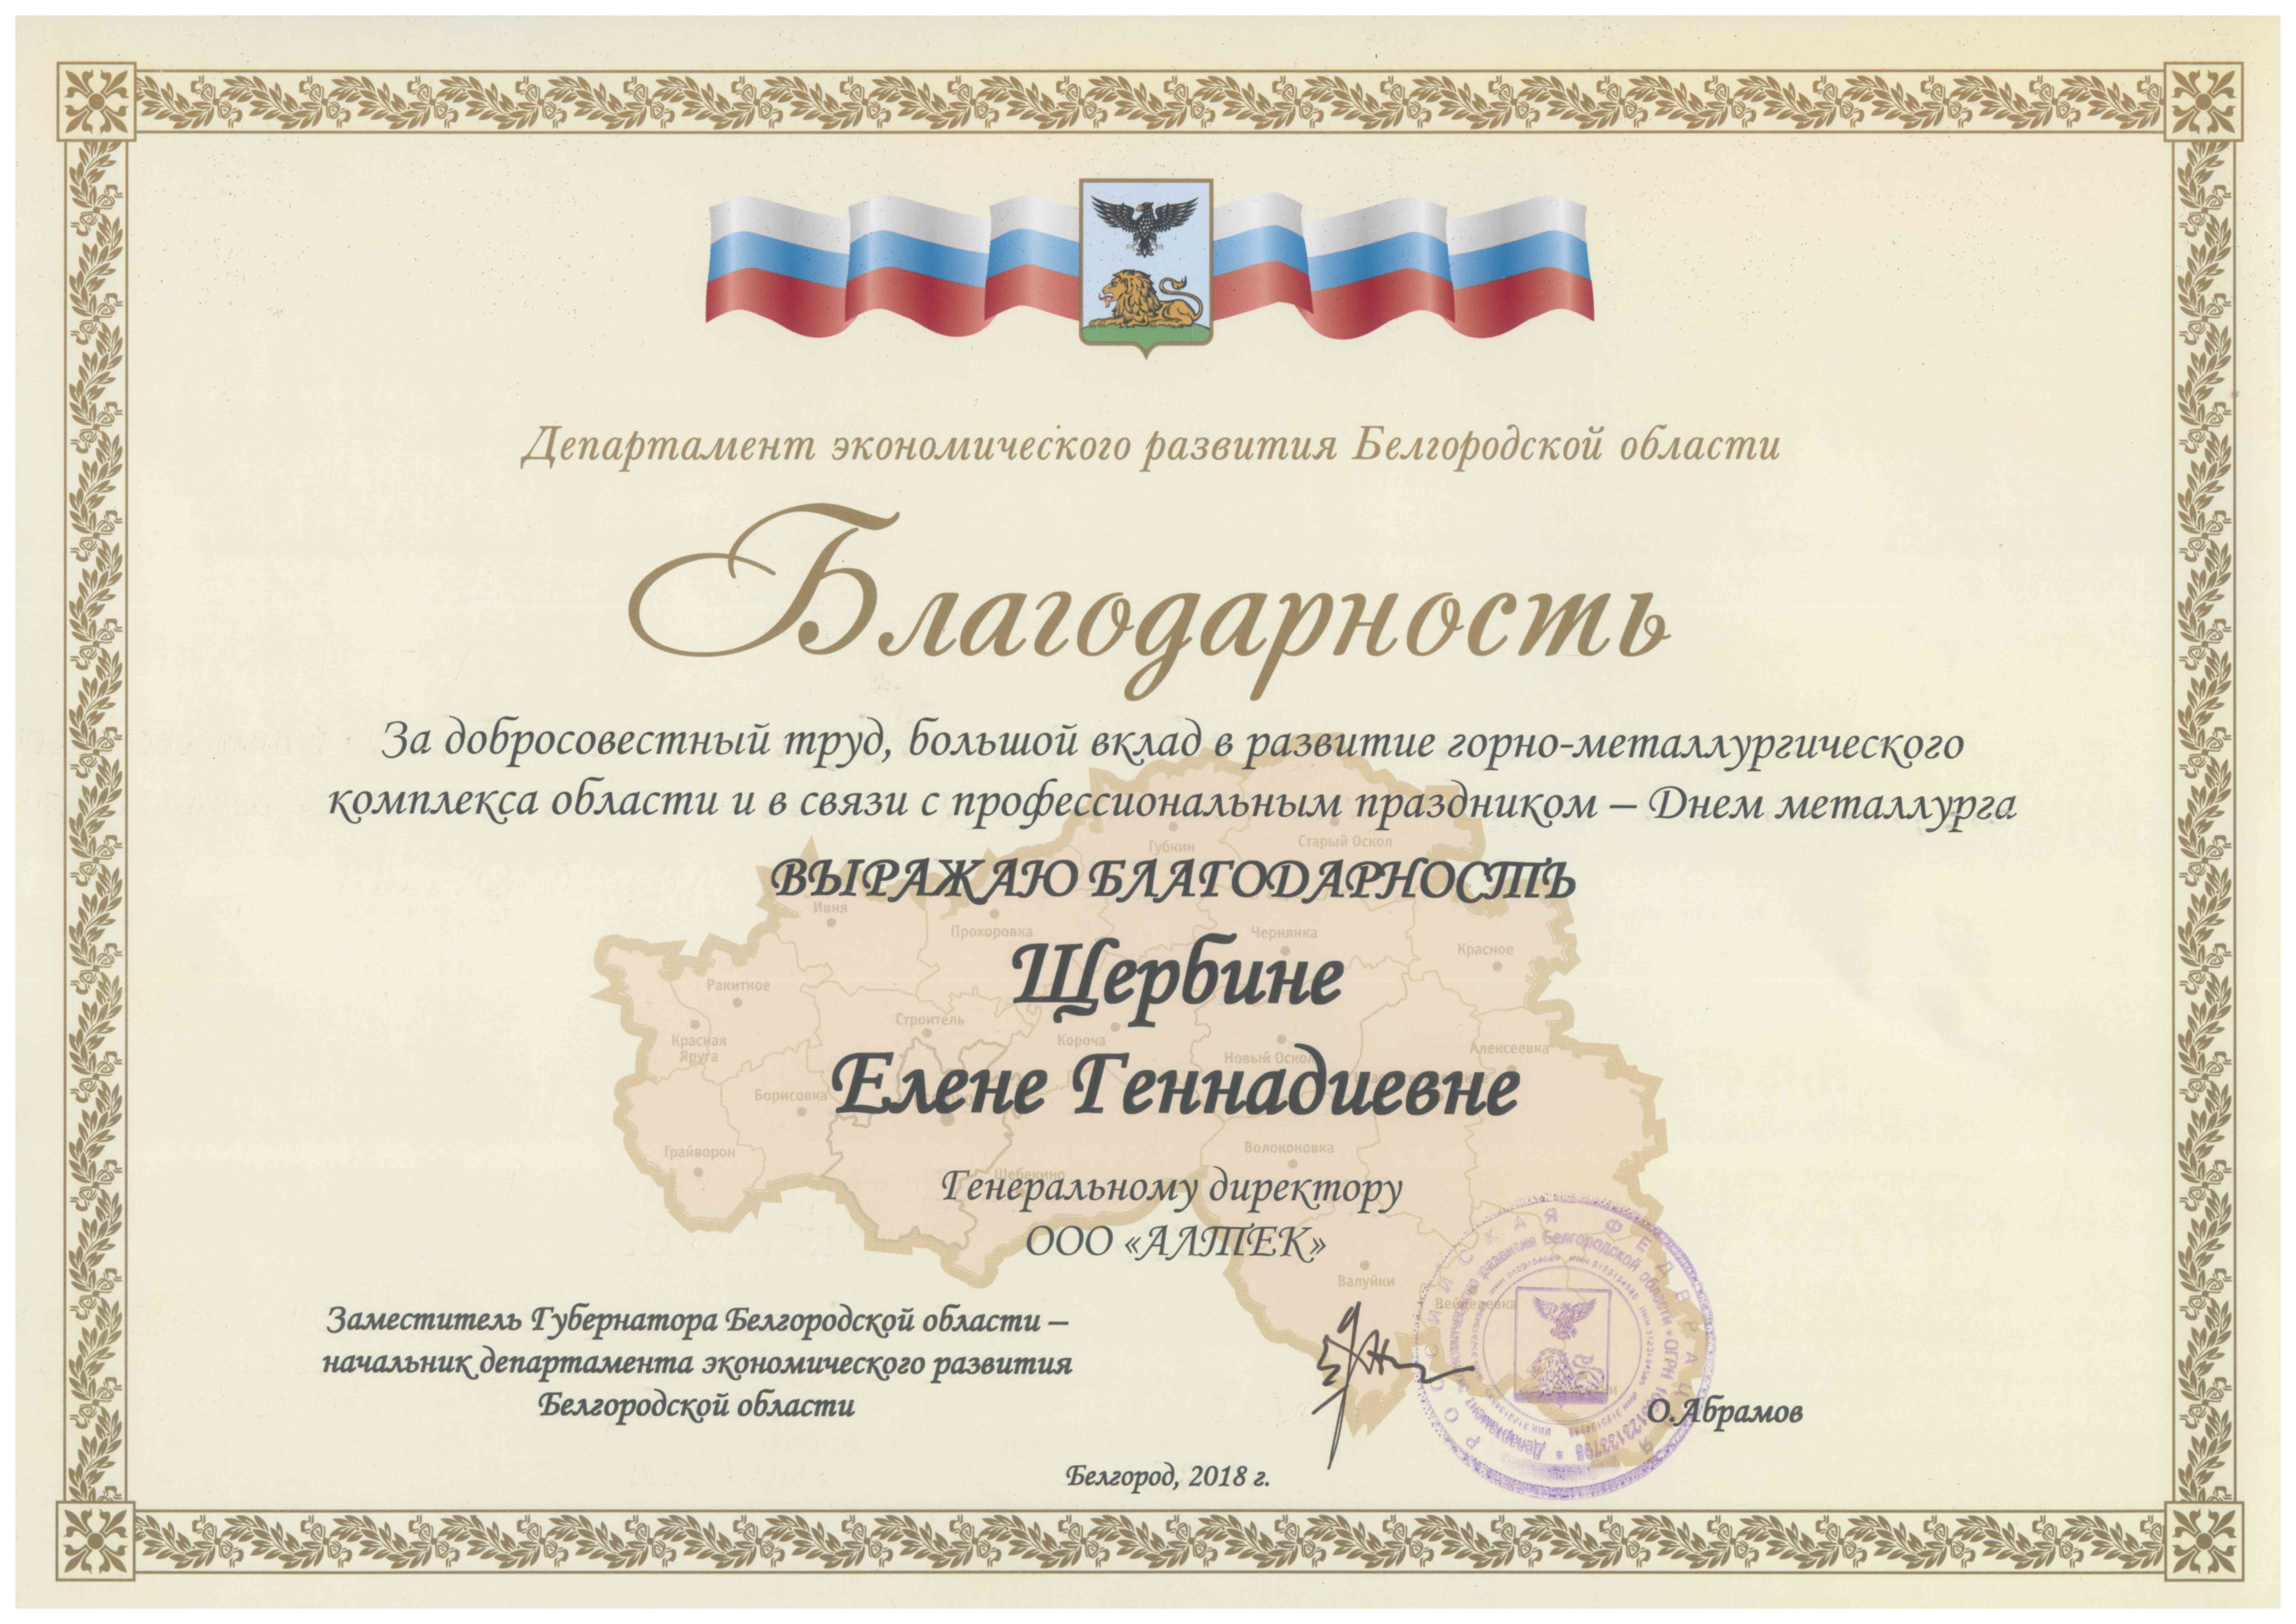 Dank der Abteilung für wirtschaftliche Entwicklung der Region Belgorod